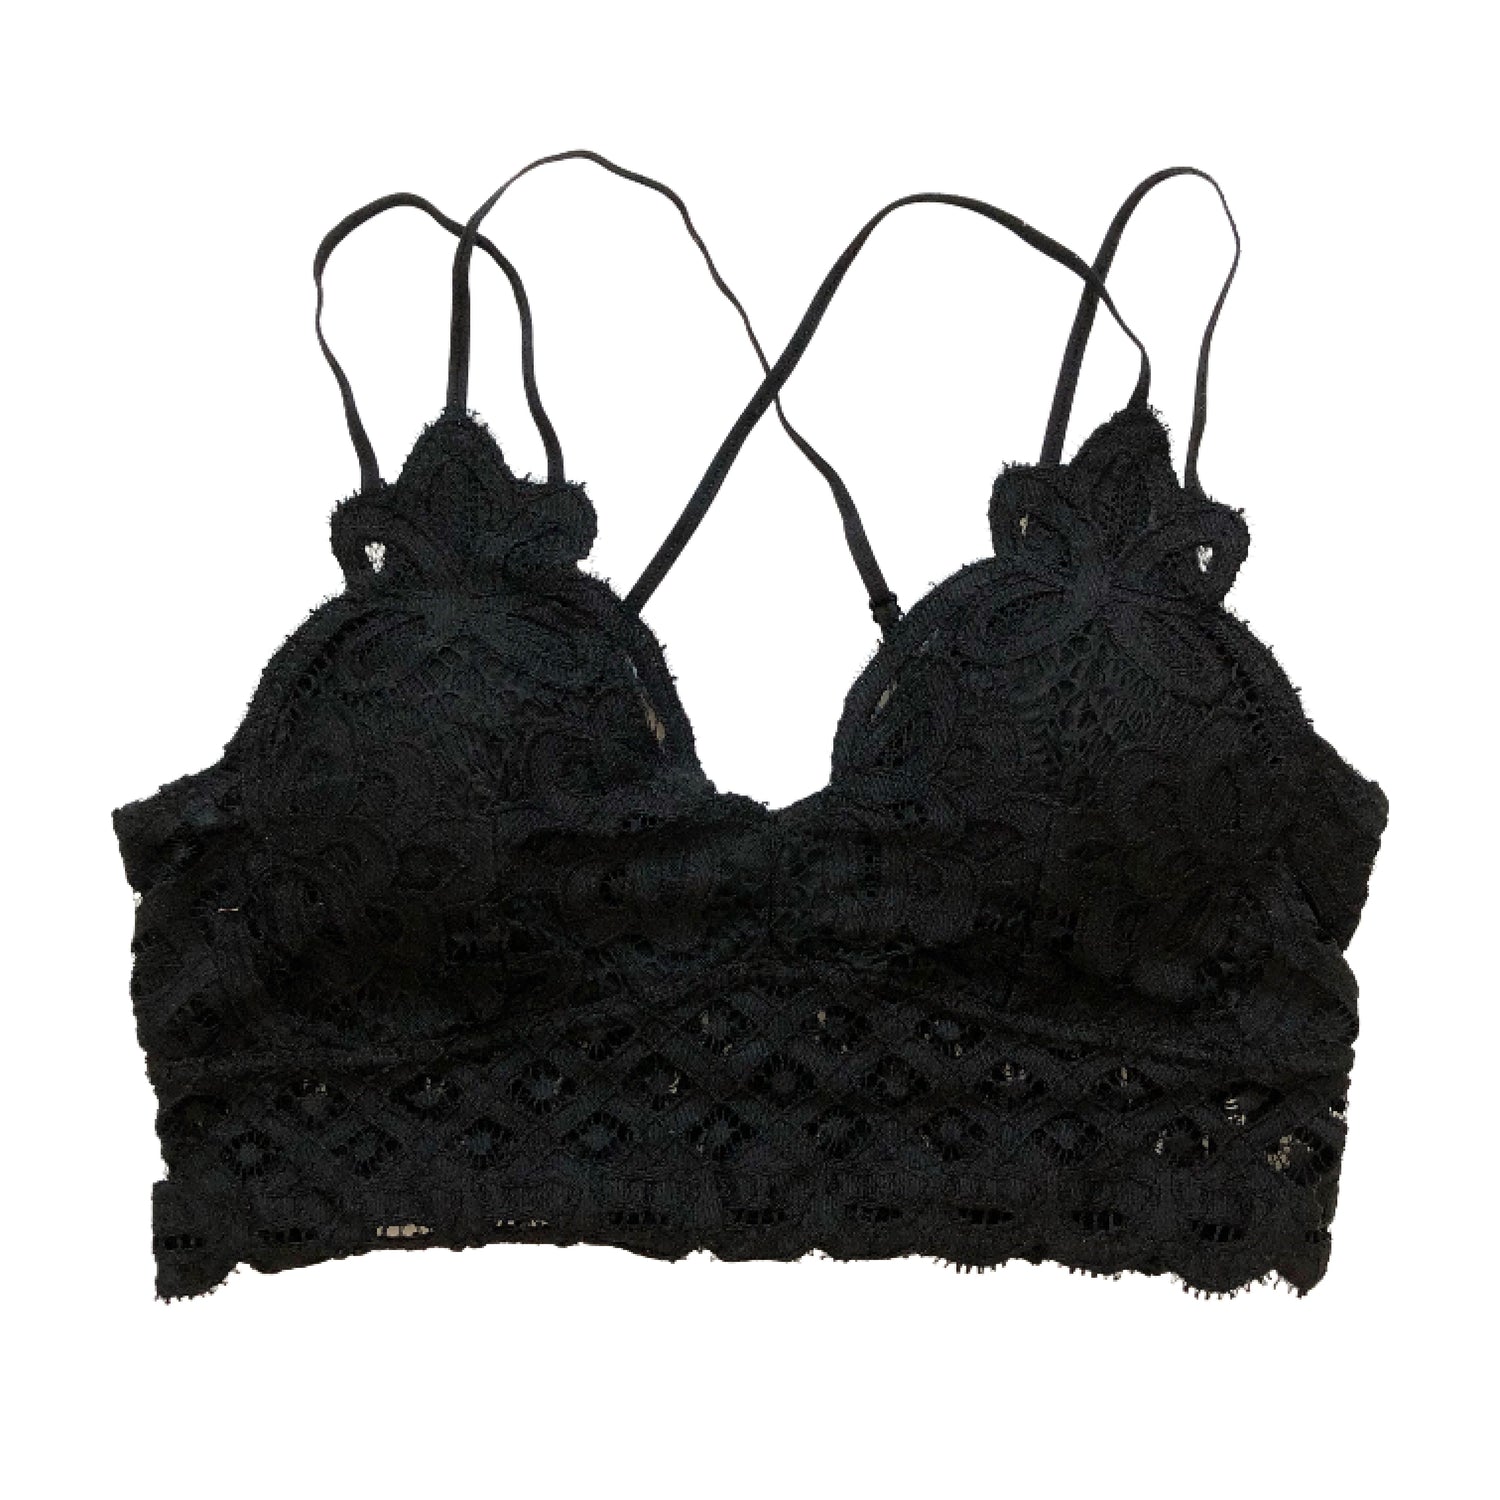 Black Crochet Bralette Top